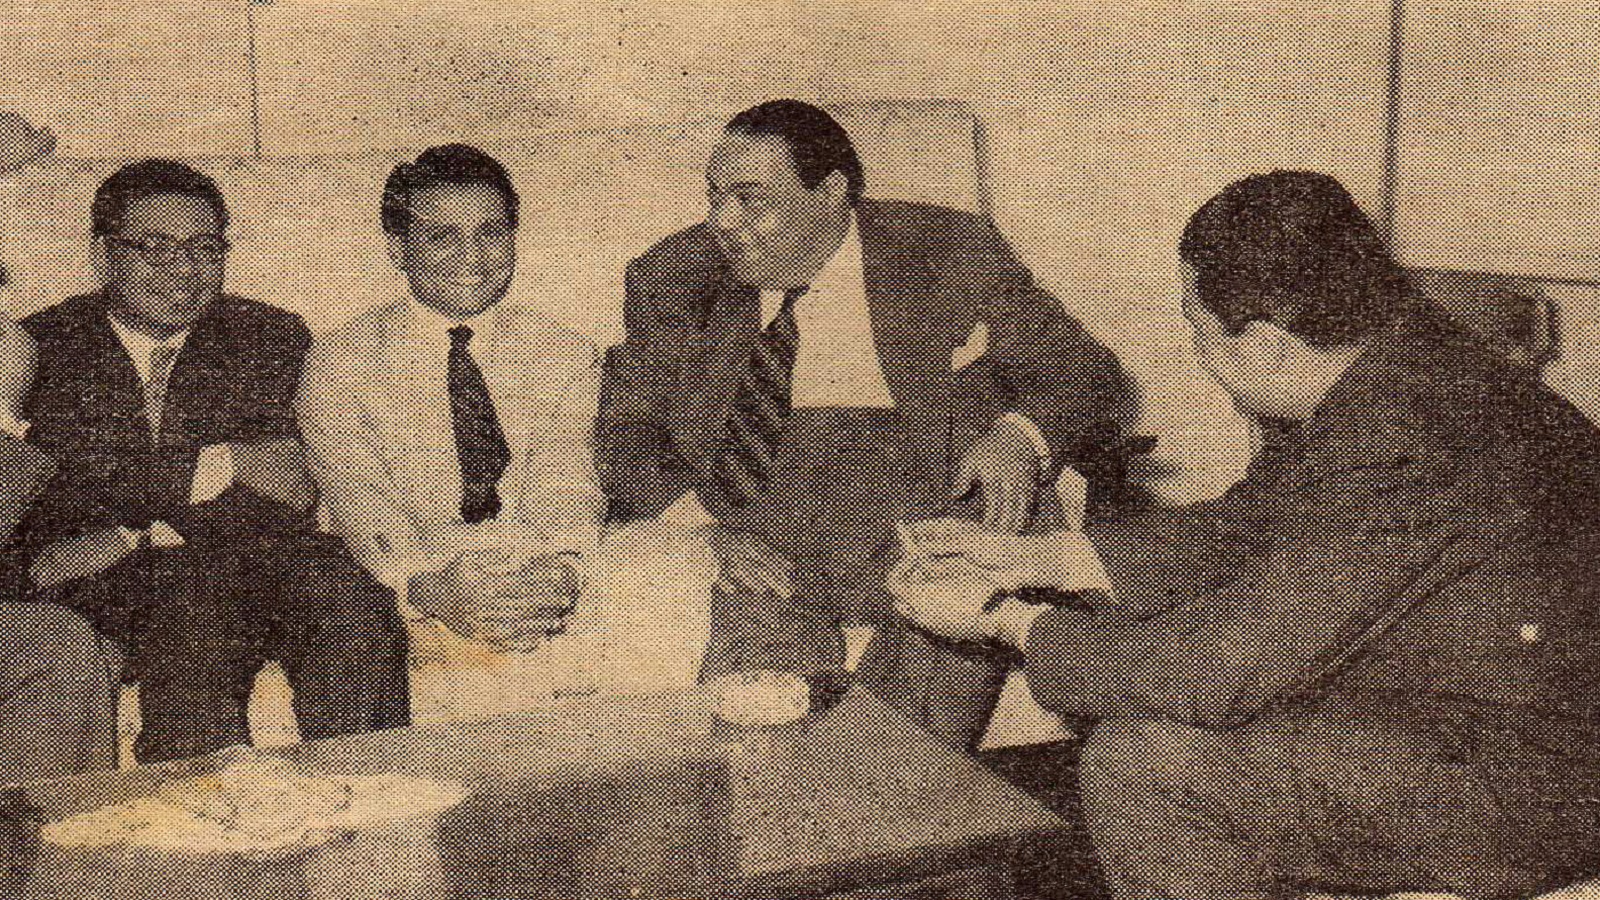 مع يوسف السباعي، كامل الشناوي، وأحمد بهاء الدين، 1955.